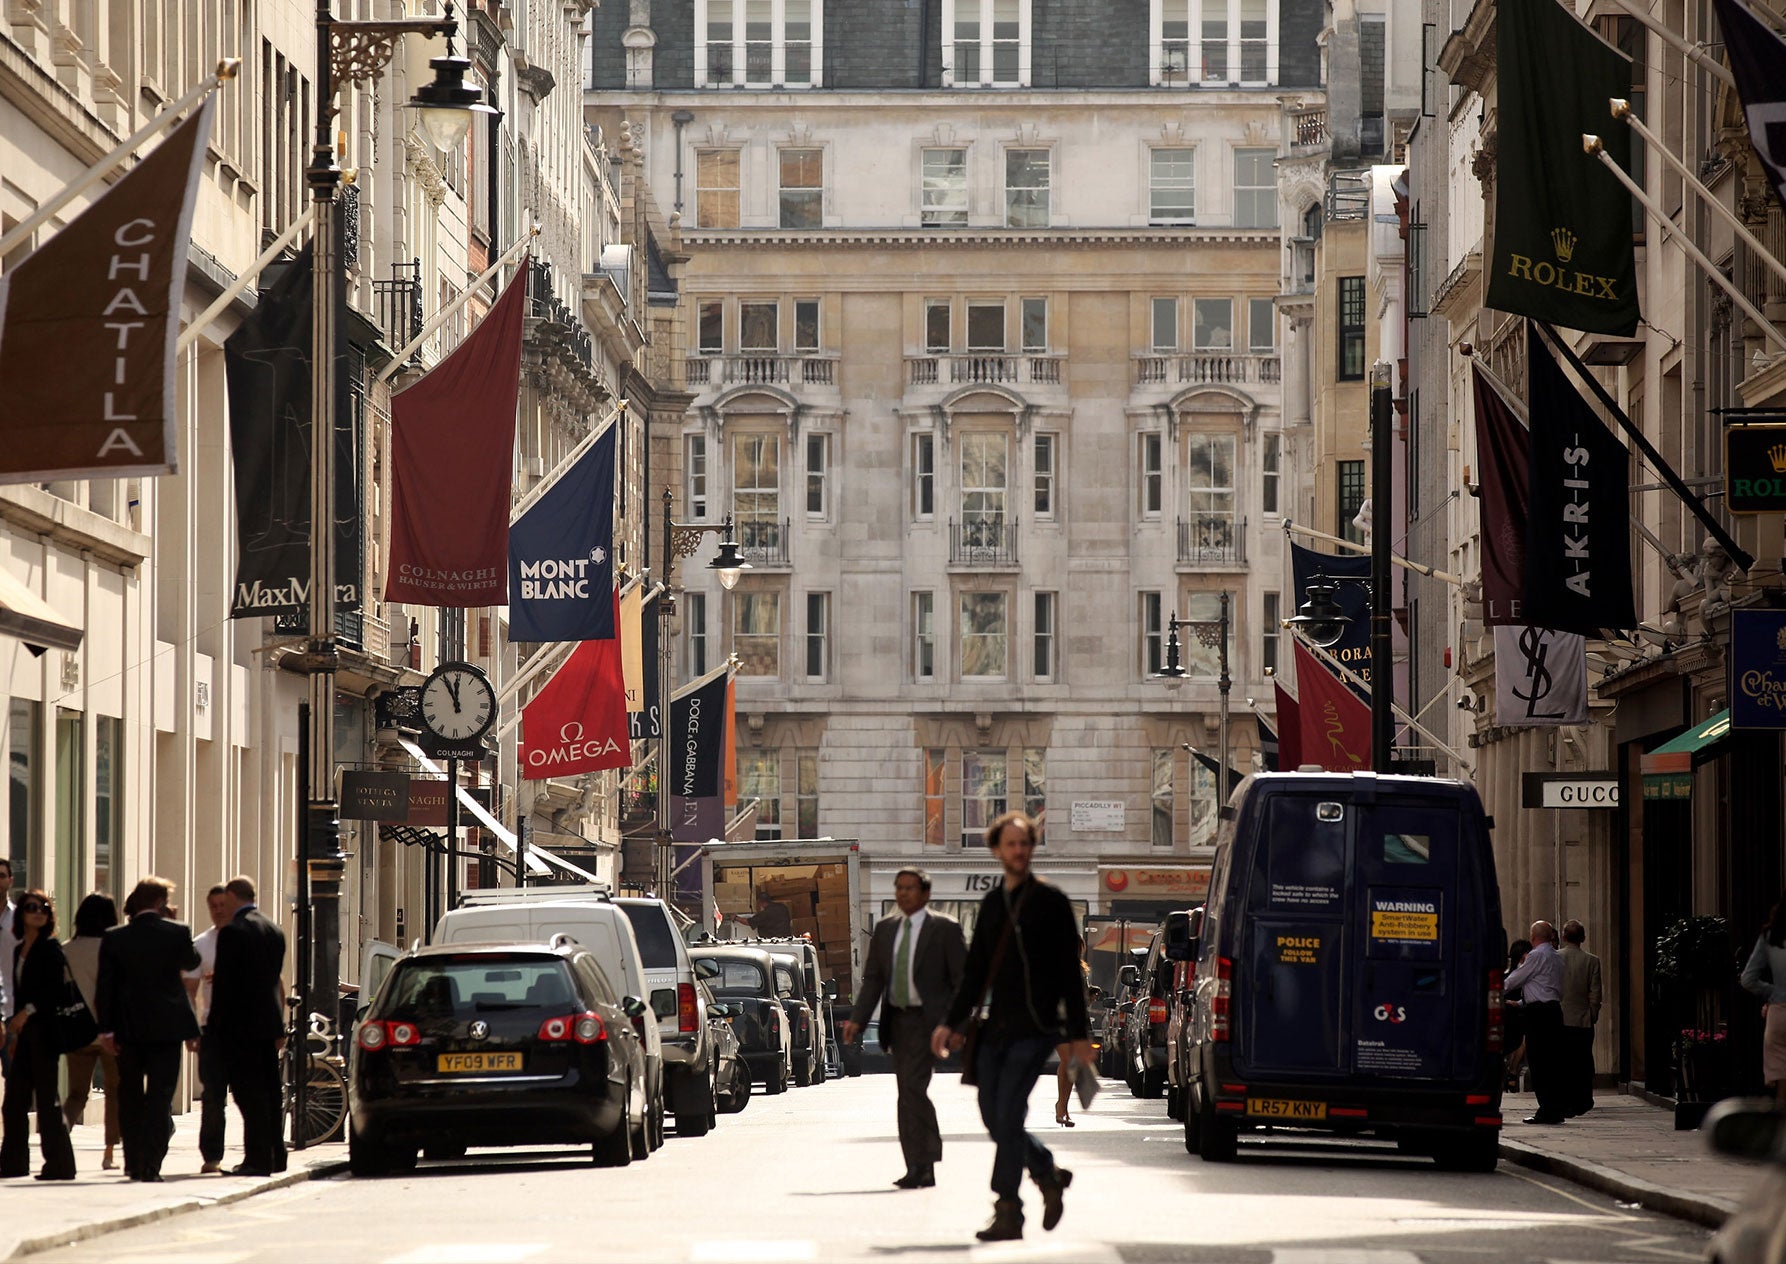 Bond Street London: A Luxury Guide